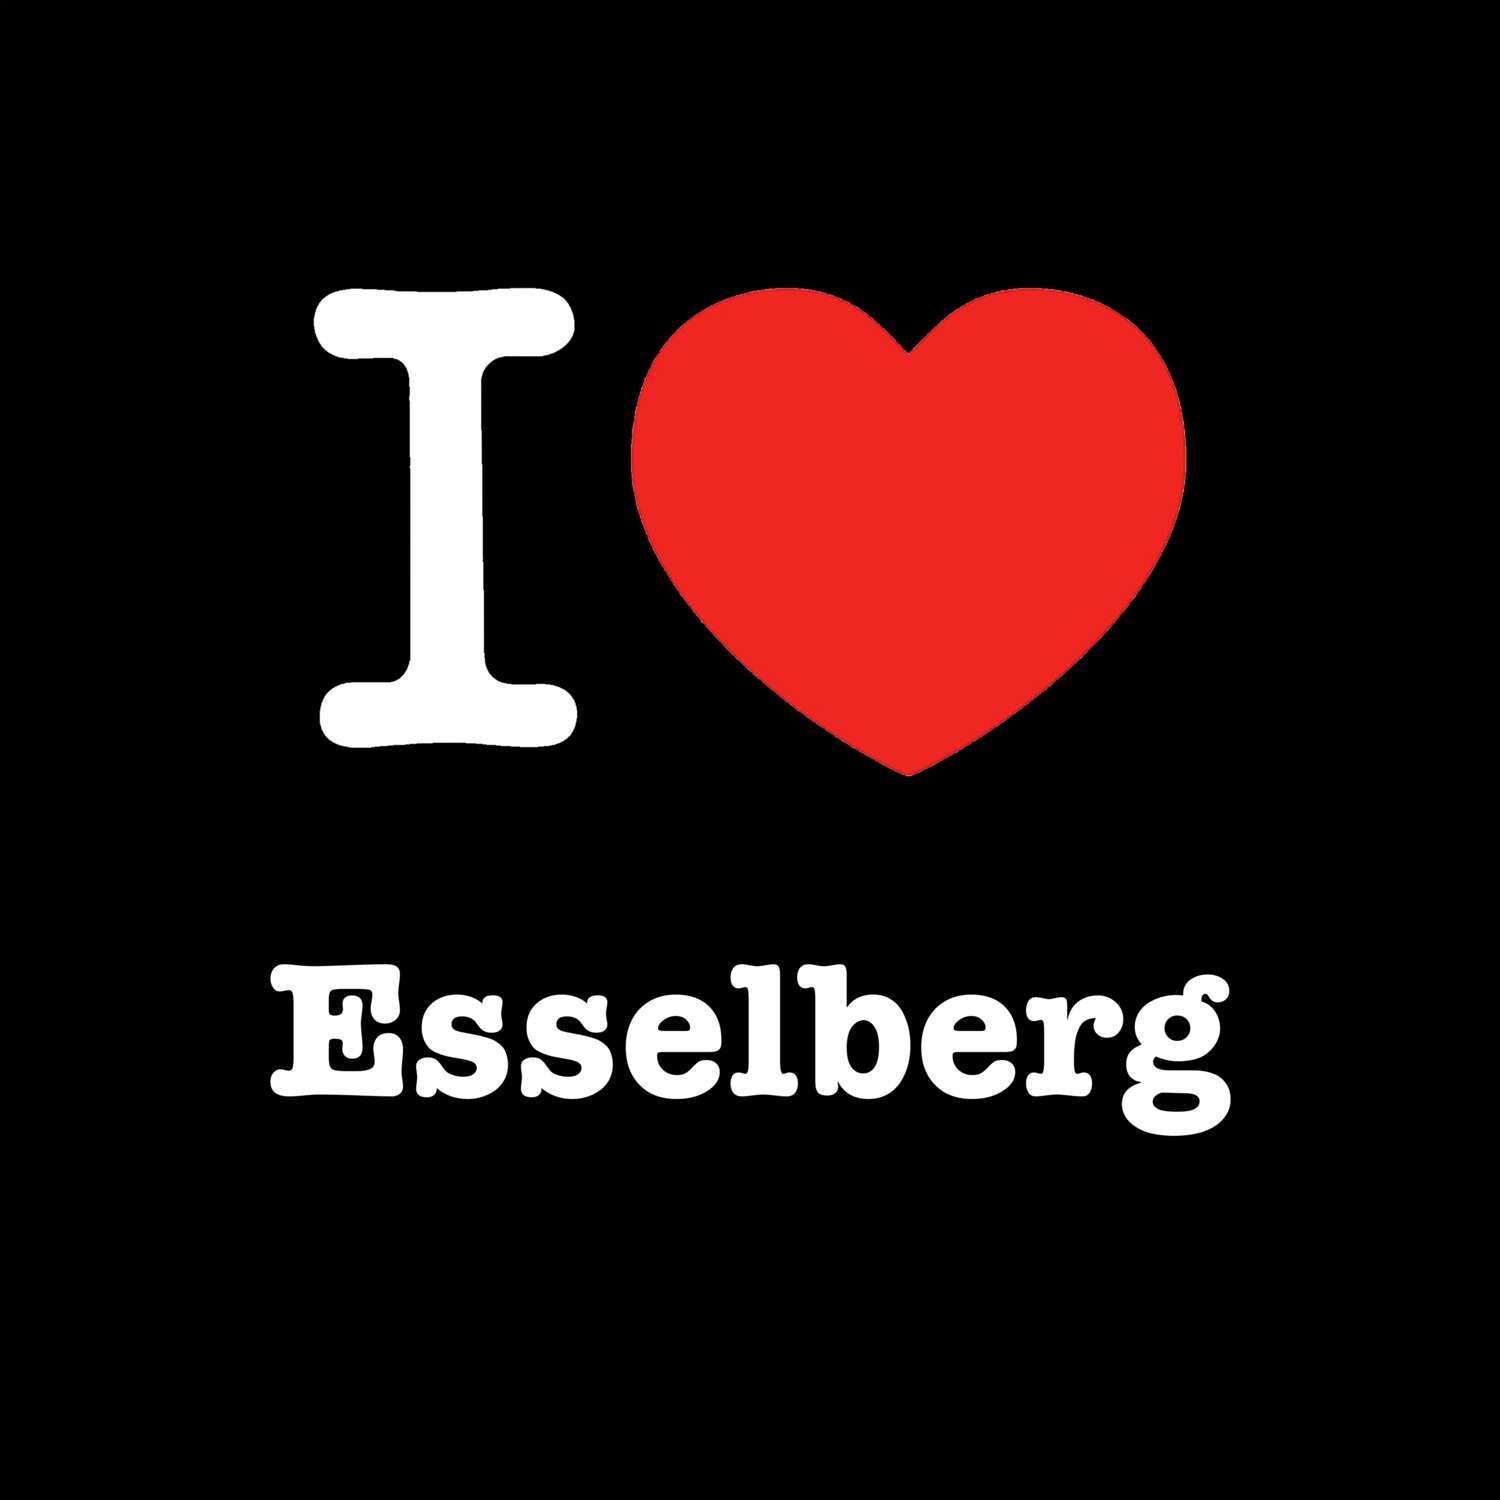 Esselberg T-Shirt »I love«